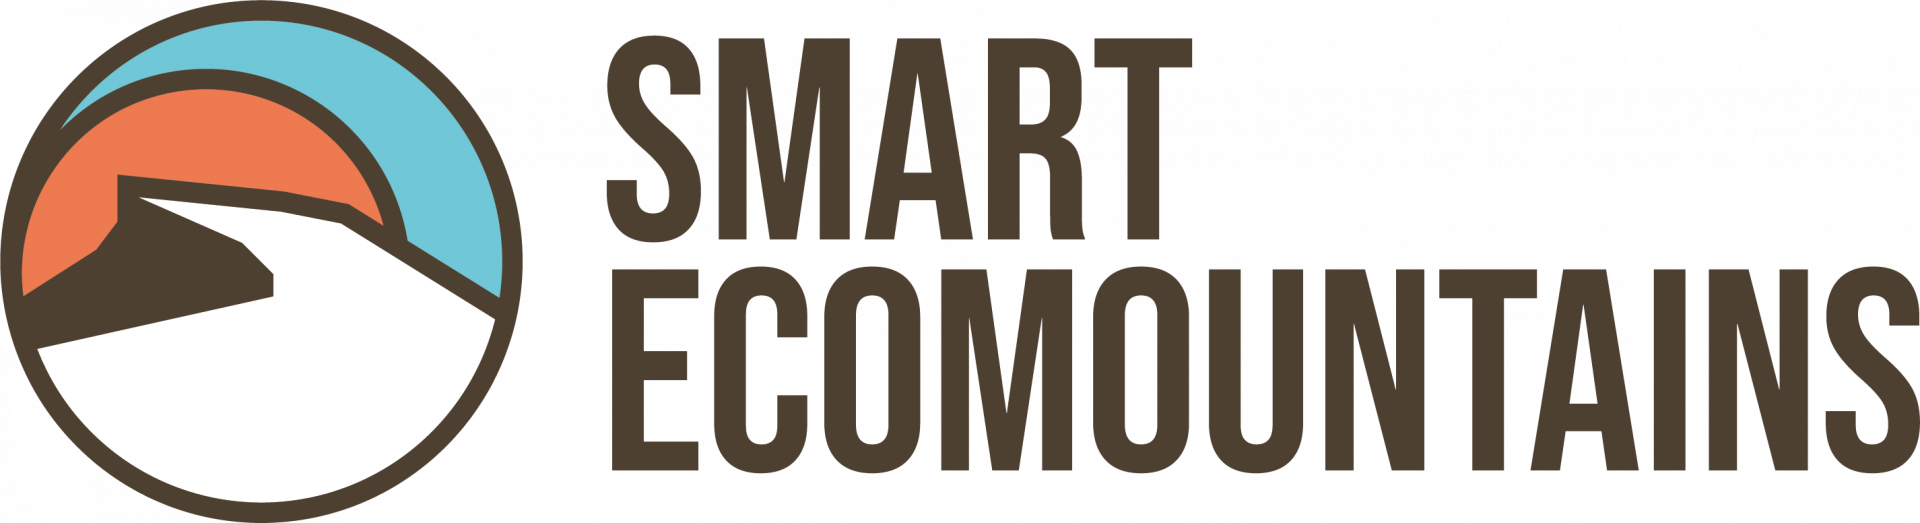 smart ecomountains